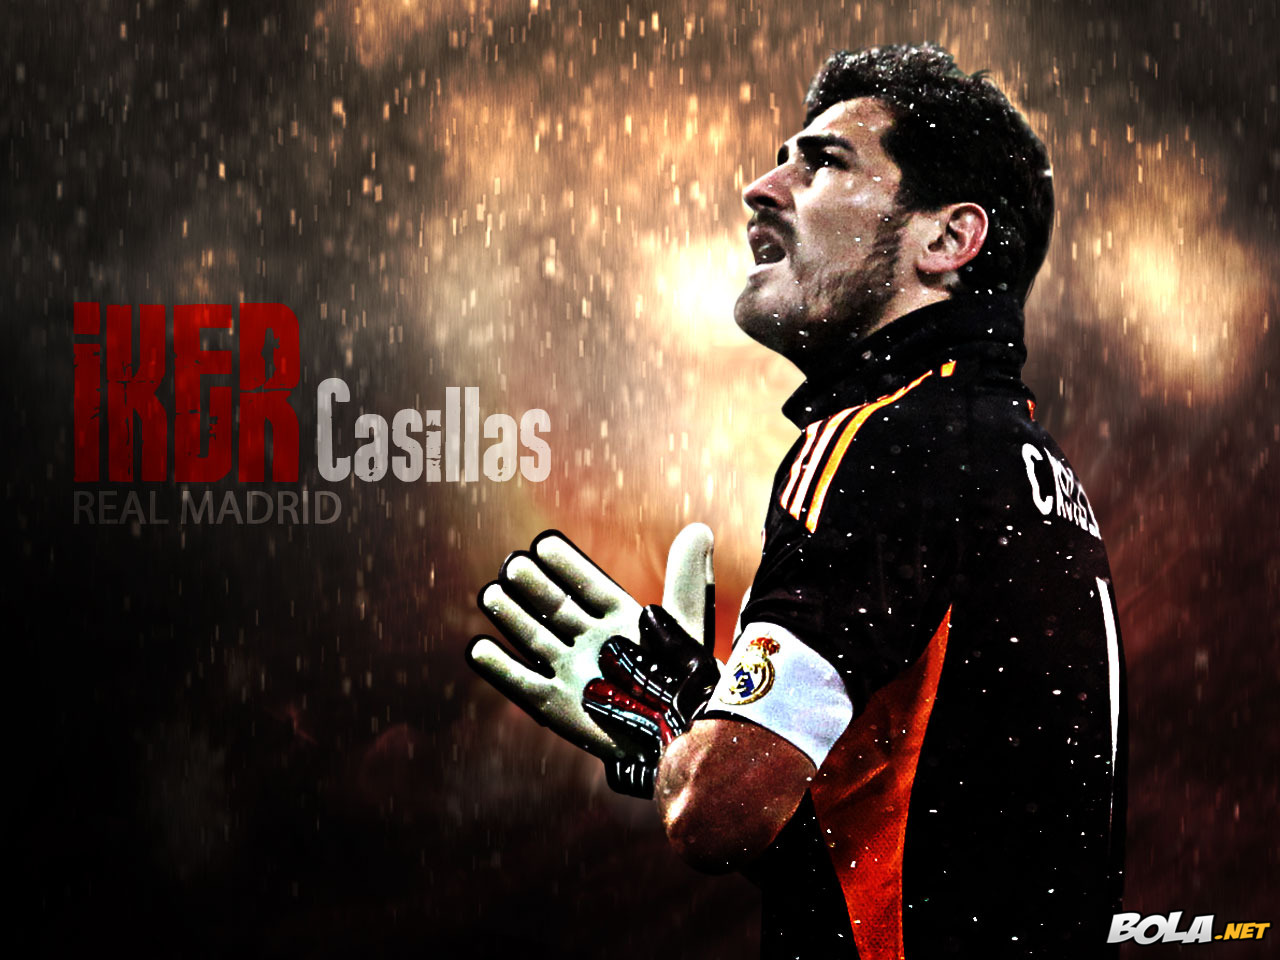 Iker Casillas Wallpaper HD